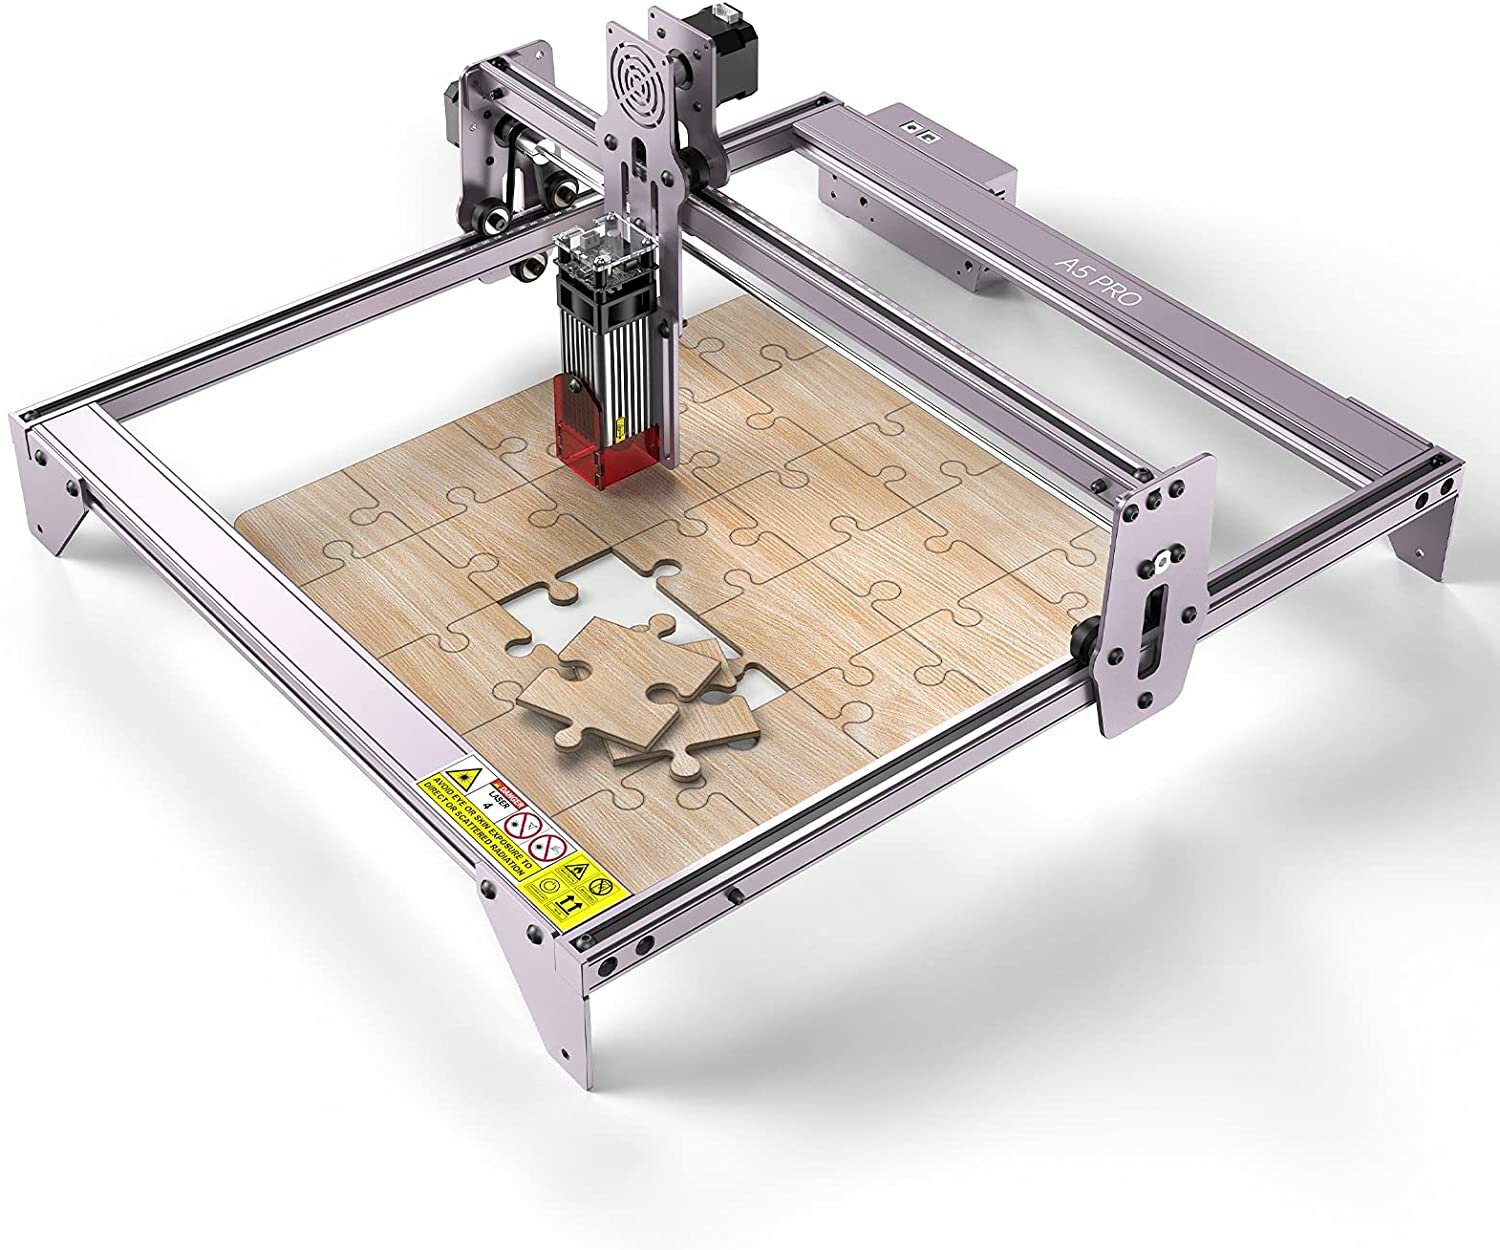 KIHIGHPO M50 Laser Engraving Machine Laser Engraver Cutter Printer Kit Desktop Gift DIY Cutter